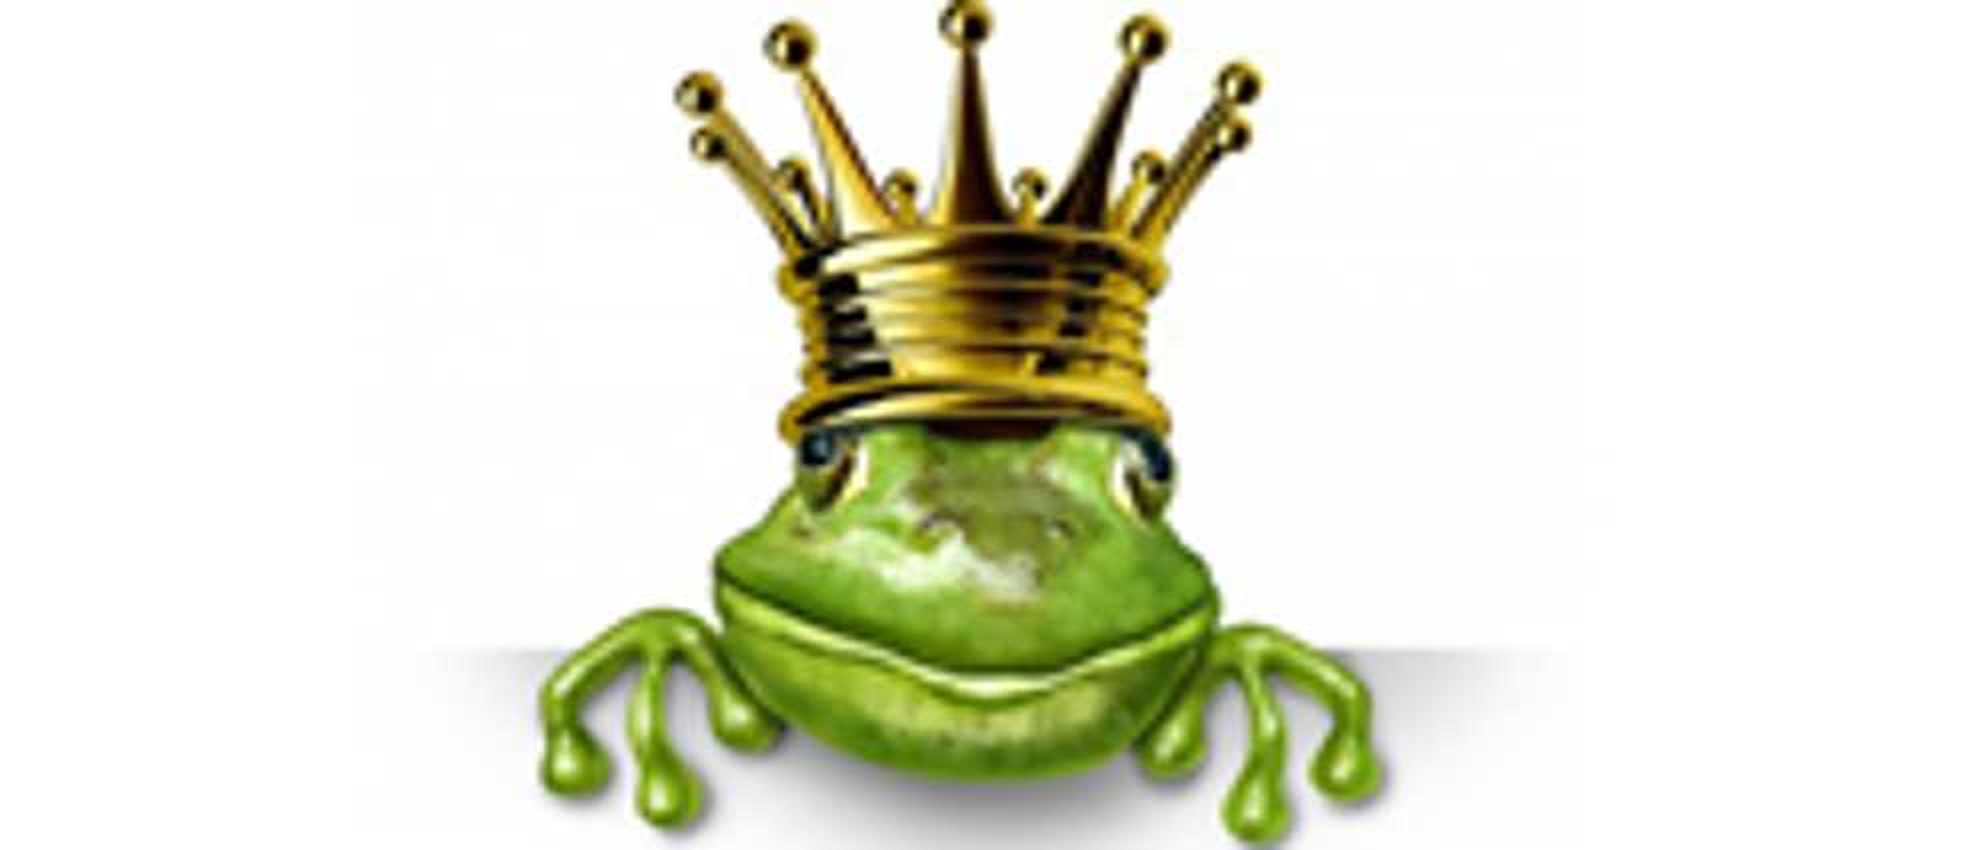 Frogs Fairy Tale demo